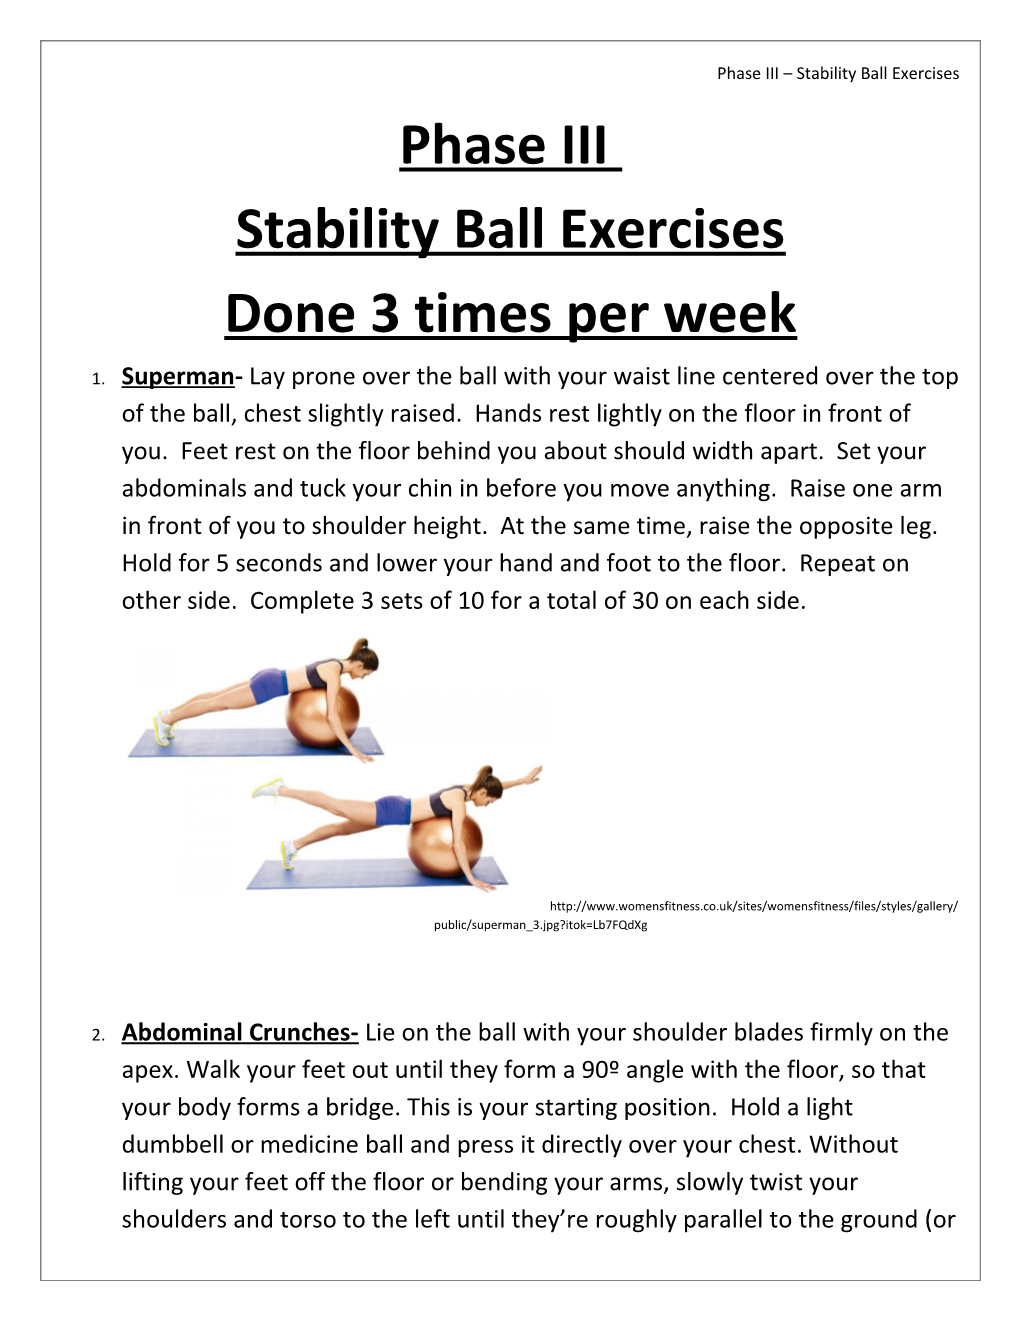 Phase III Stability Ball Exercises